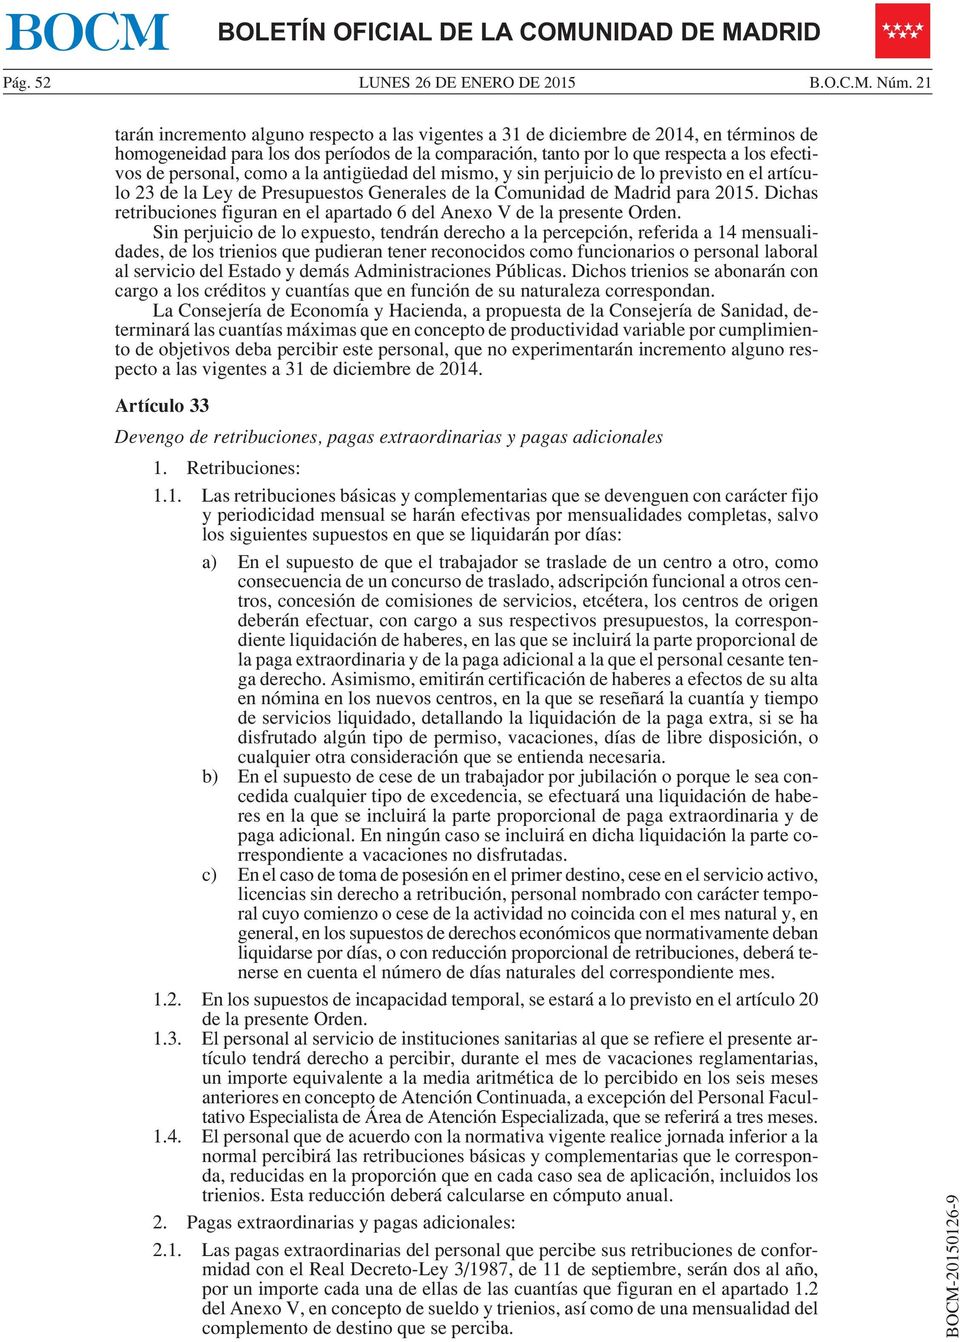 personal, como a la antigüedad del mismo, y sin perjuicio de lo previsto en el artículo 23 de la Ley de Presupuestos Generales de la Comunidad de Madrid para 2015.